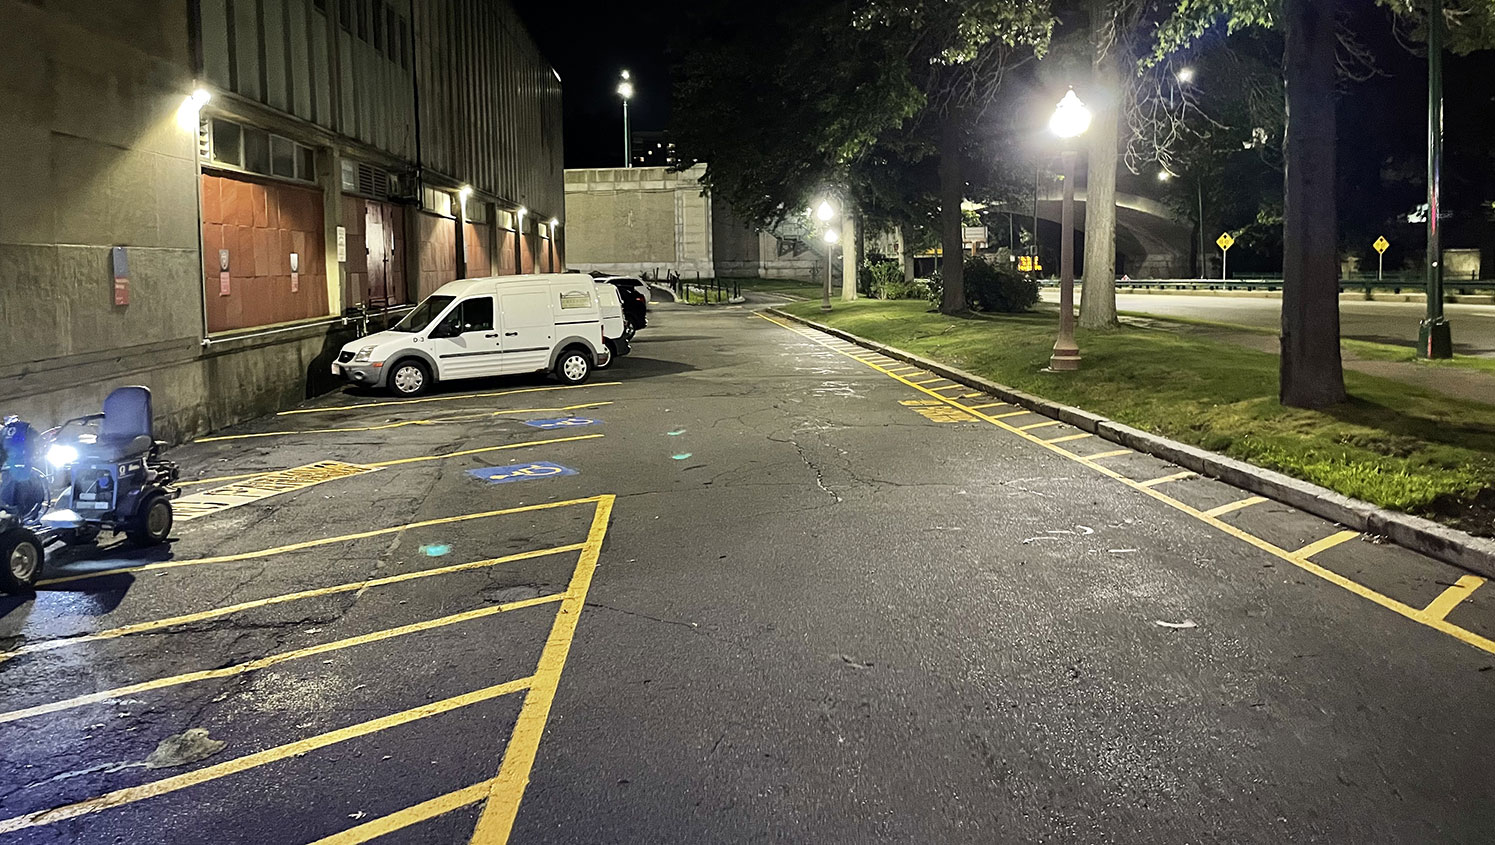 re-striped parking lot markings